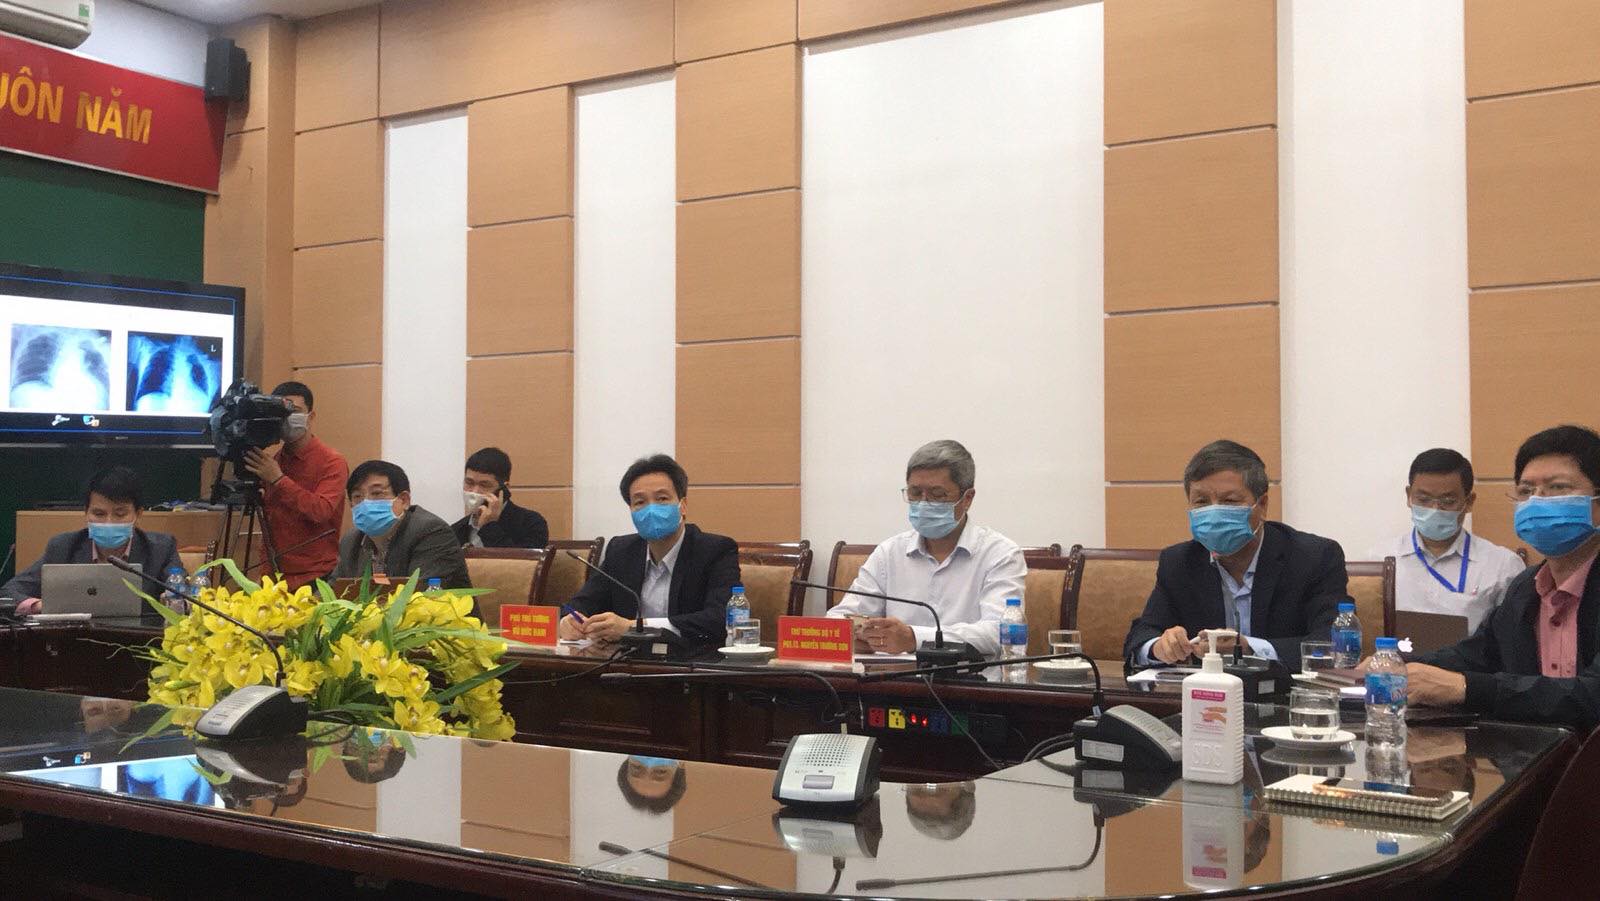 &nbsp;Phó Thủ tướng Vũ Đức Đam, Thứ trưởng Bộ Y tế Nguyễn Trường Sơn cùng các chuyên gia tại điểm cầu Bộ Y tế. (Ảnh: Thái Bình)